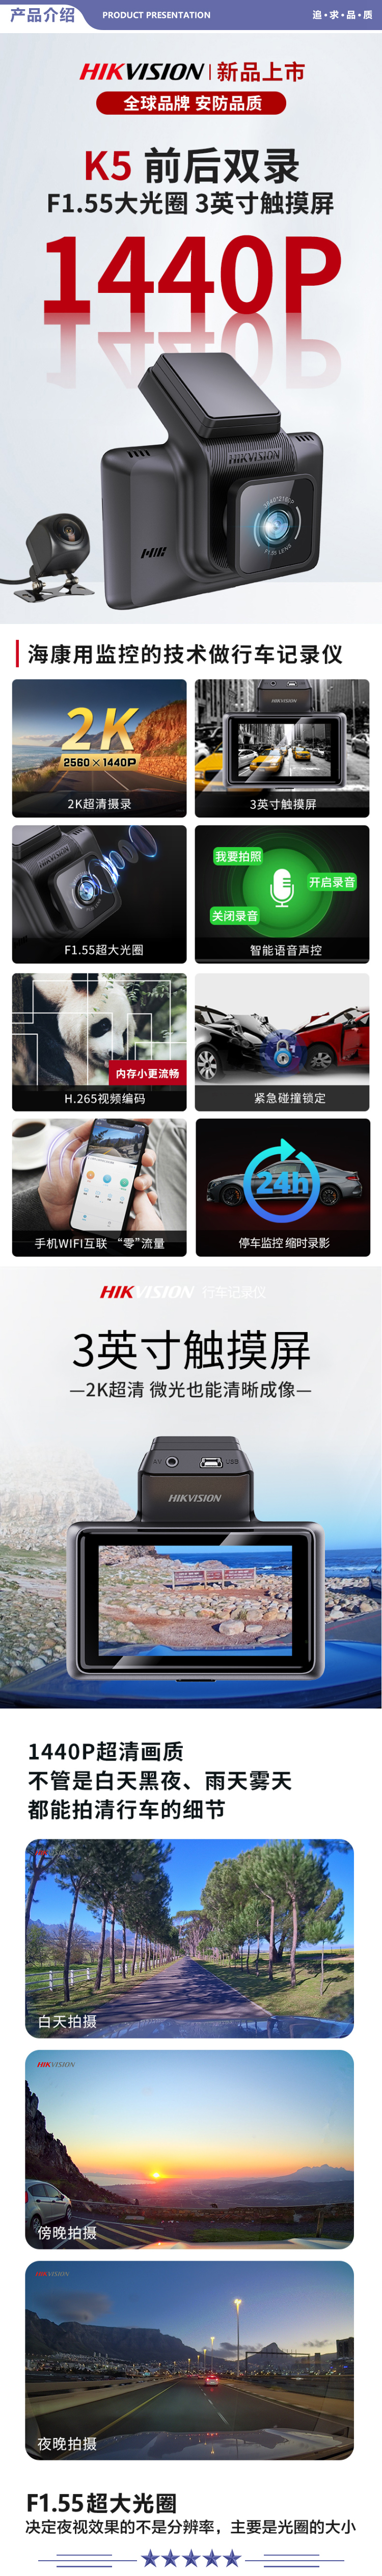 海康威视 K5 智能行车记录仪 1440P超高清夜视画质 前后双录3英寸触摸屏 手机互联语音声控+64G卡套餐 2.jpg